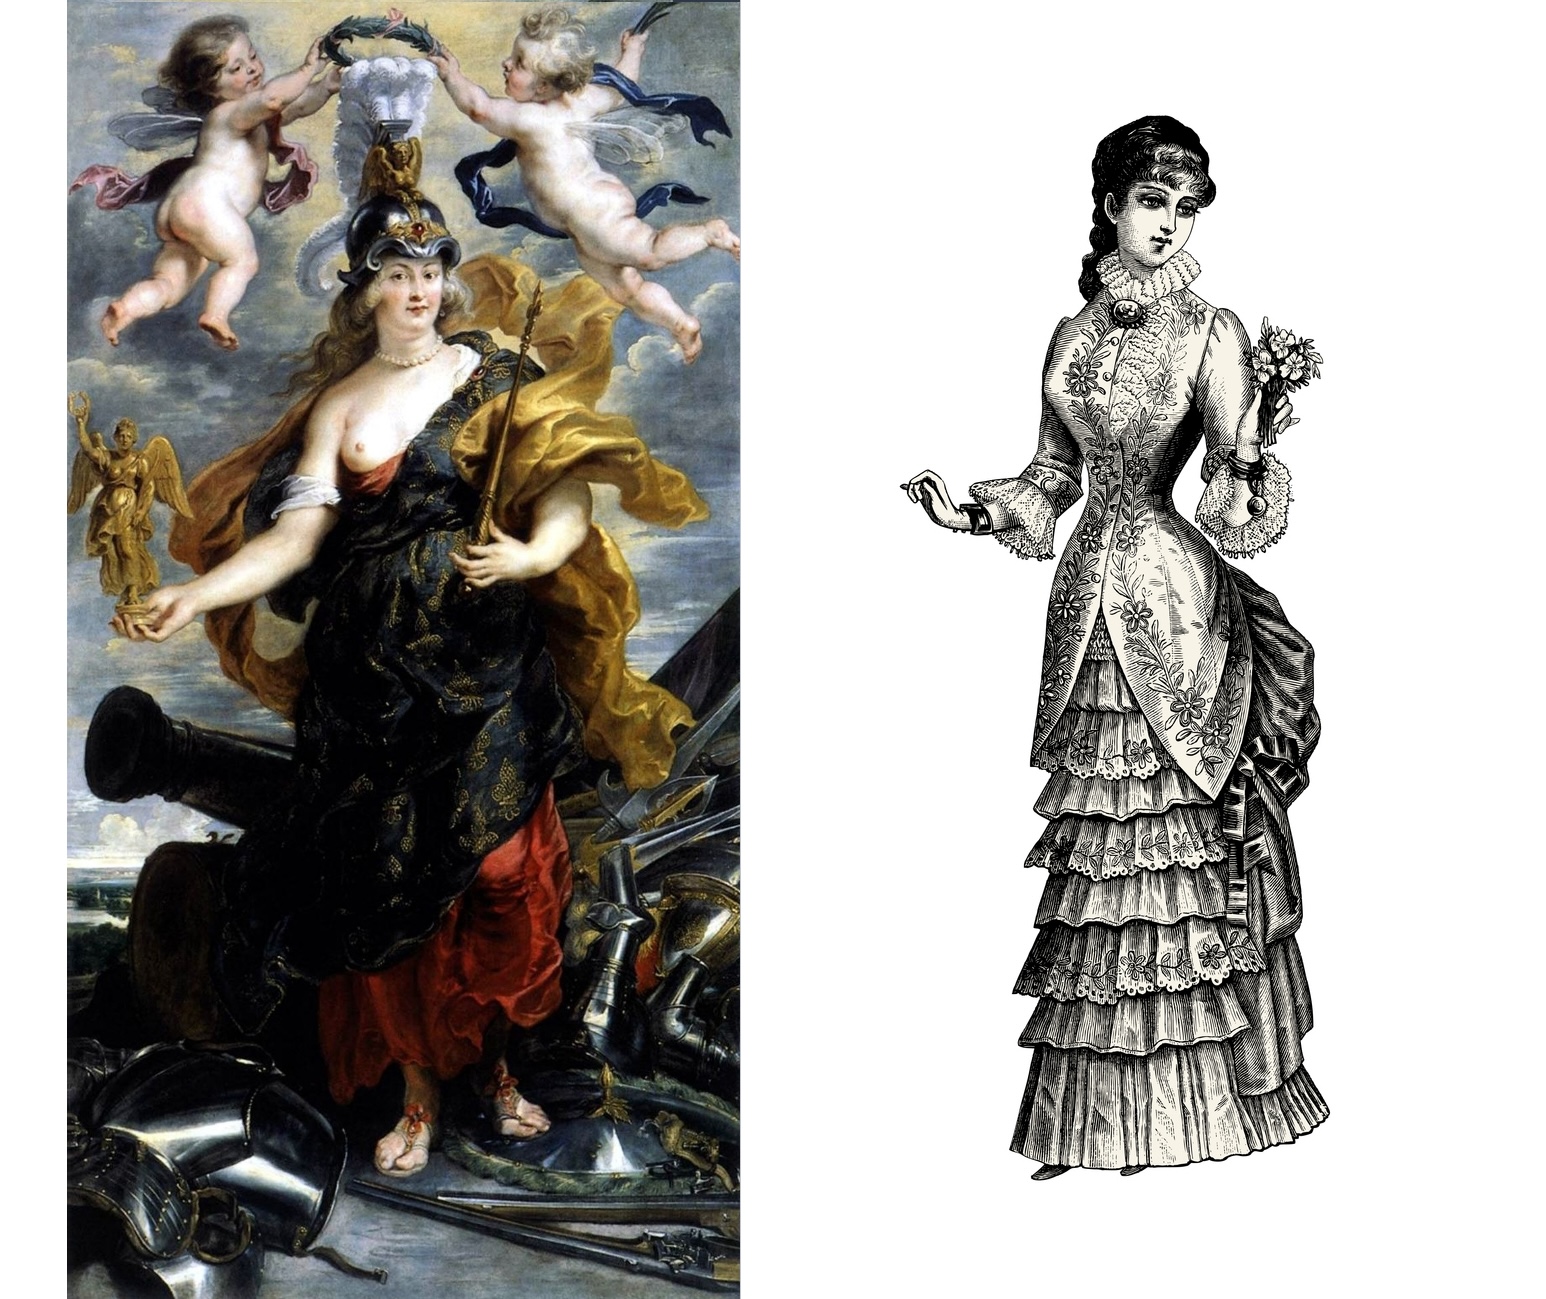 Porovnání ideálů krásy z různých století